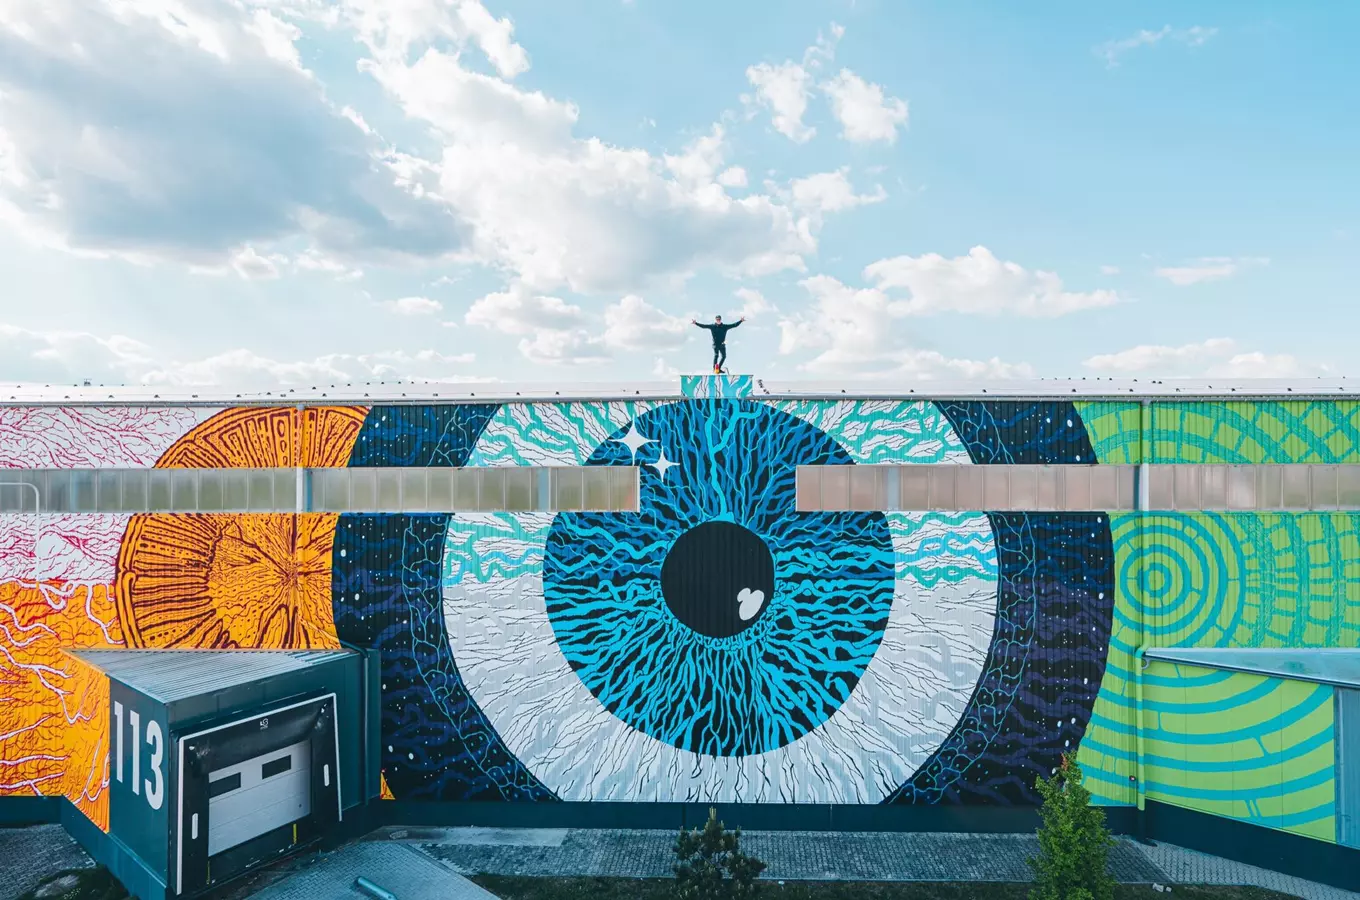 Murál Kosmos na letišti - jeden z největších murálů na světě